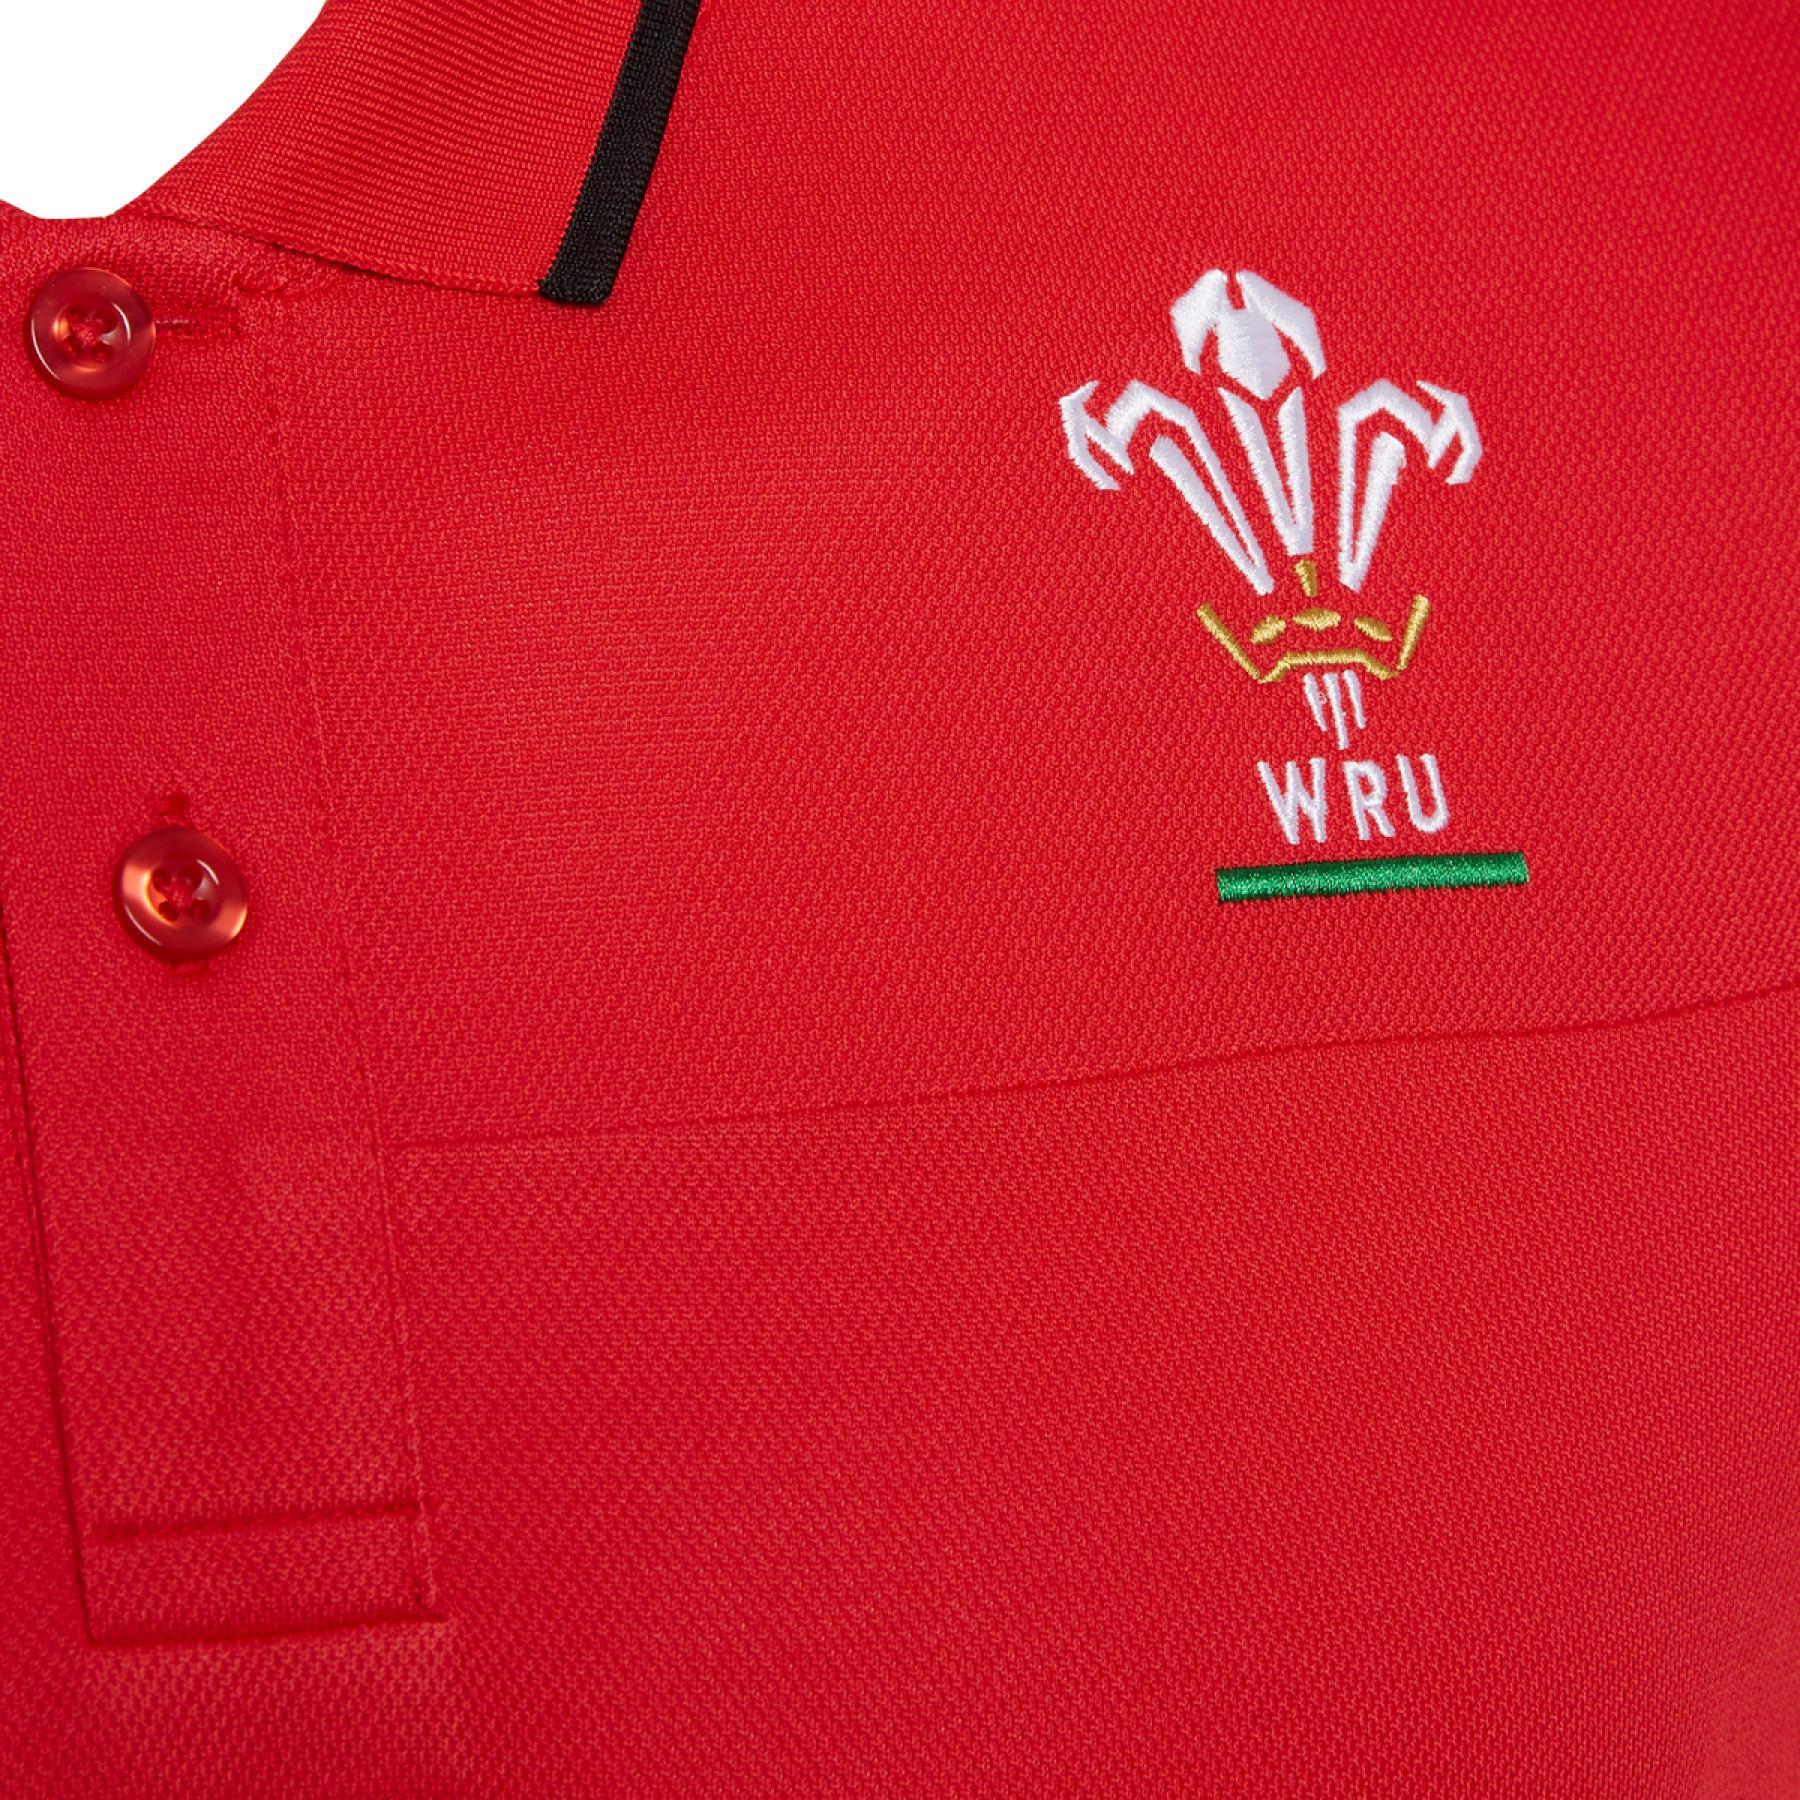 Pólo Pays de Galles rugby 2020/21